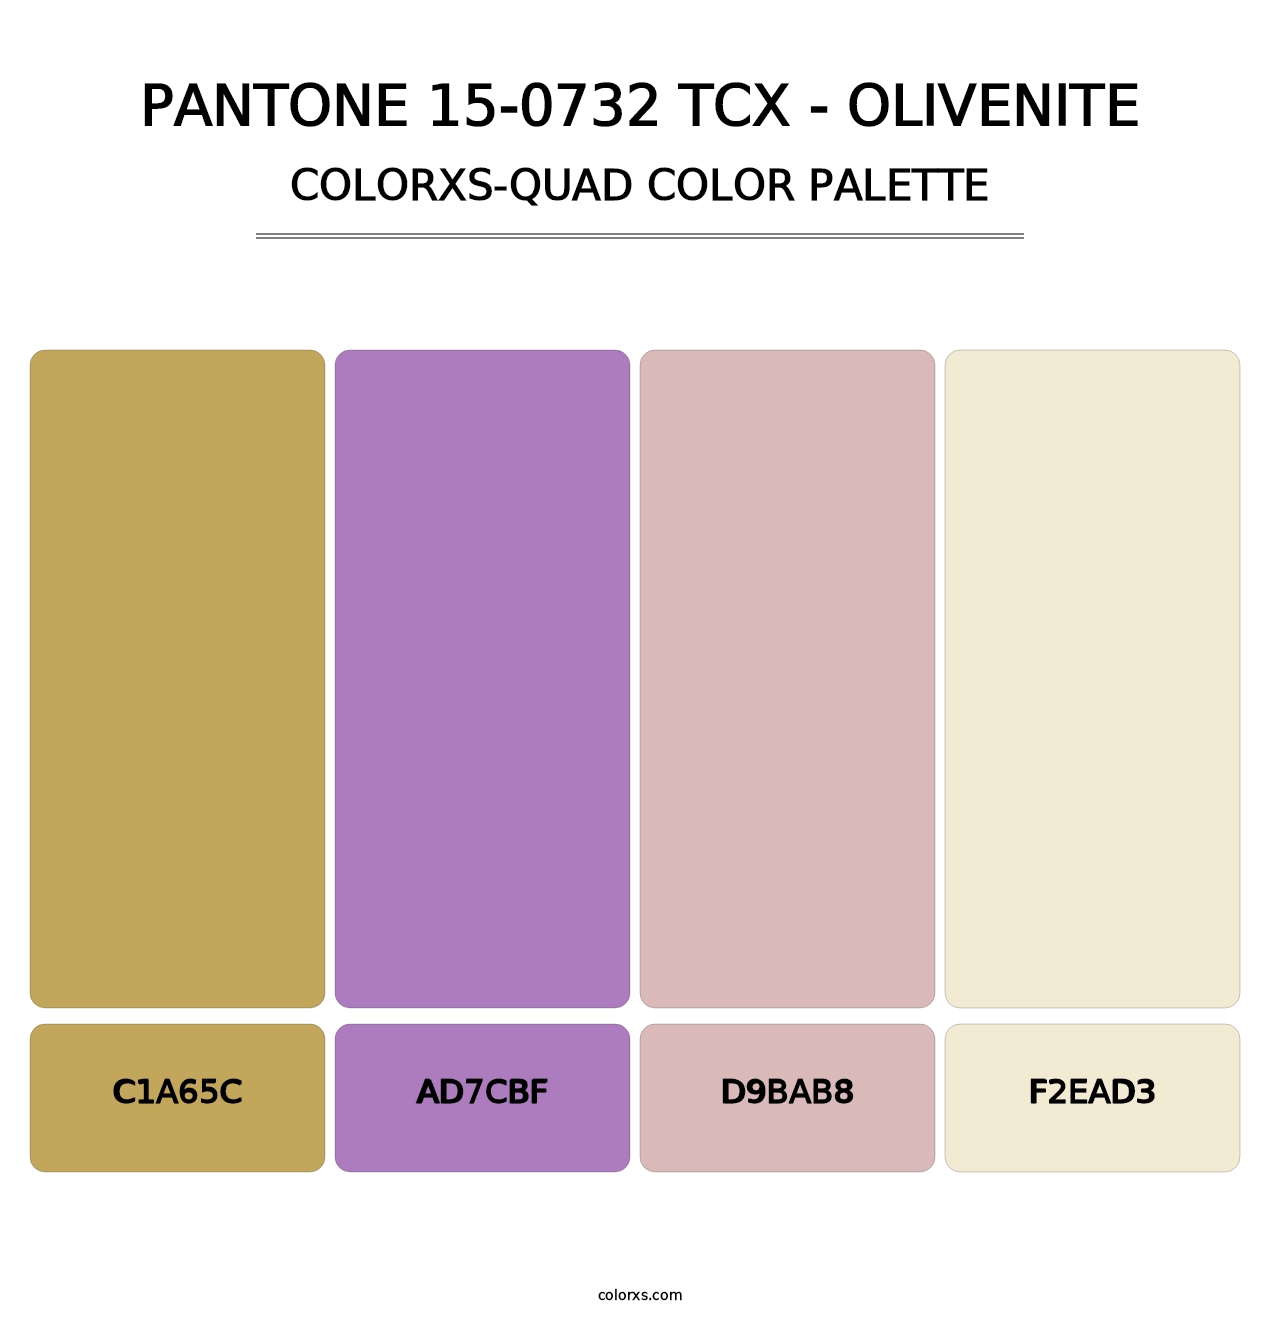 PANTONE 15-0732 TCX - Olivenite - Colorxs Quad Palette